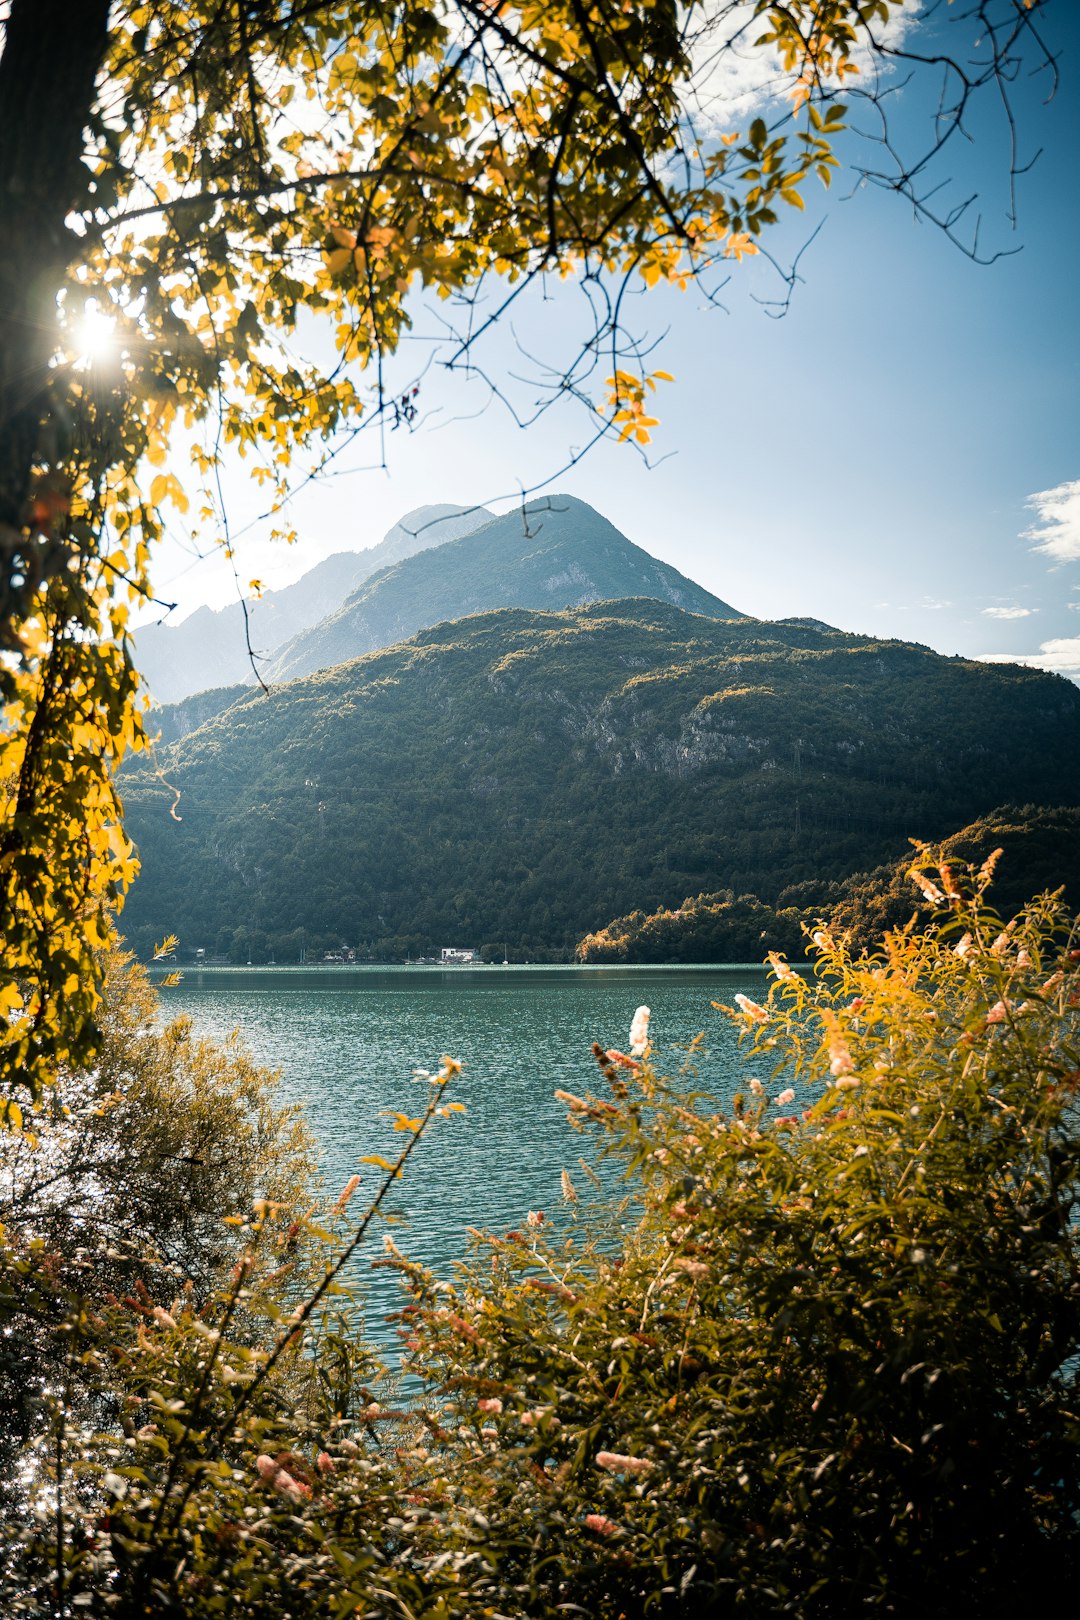 Lake photo spot Comune di Cavazzo Carnico Udine